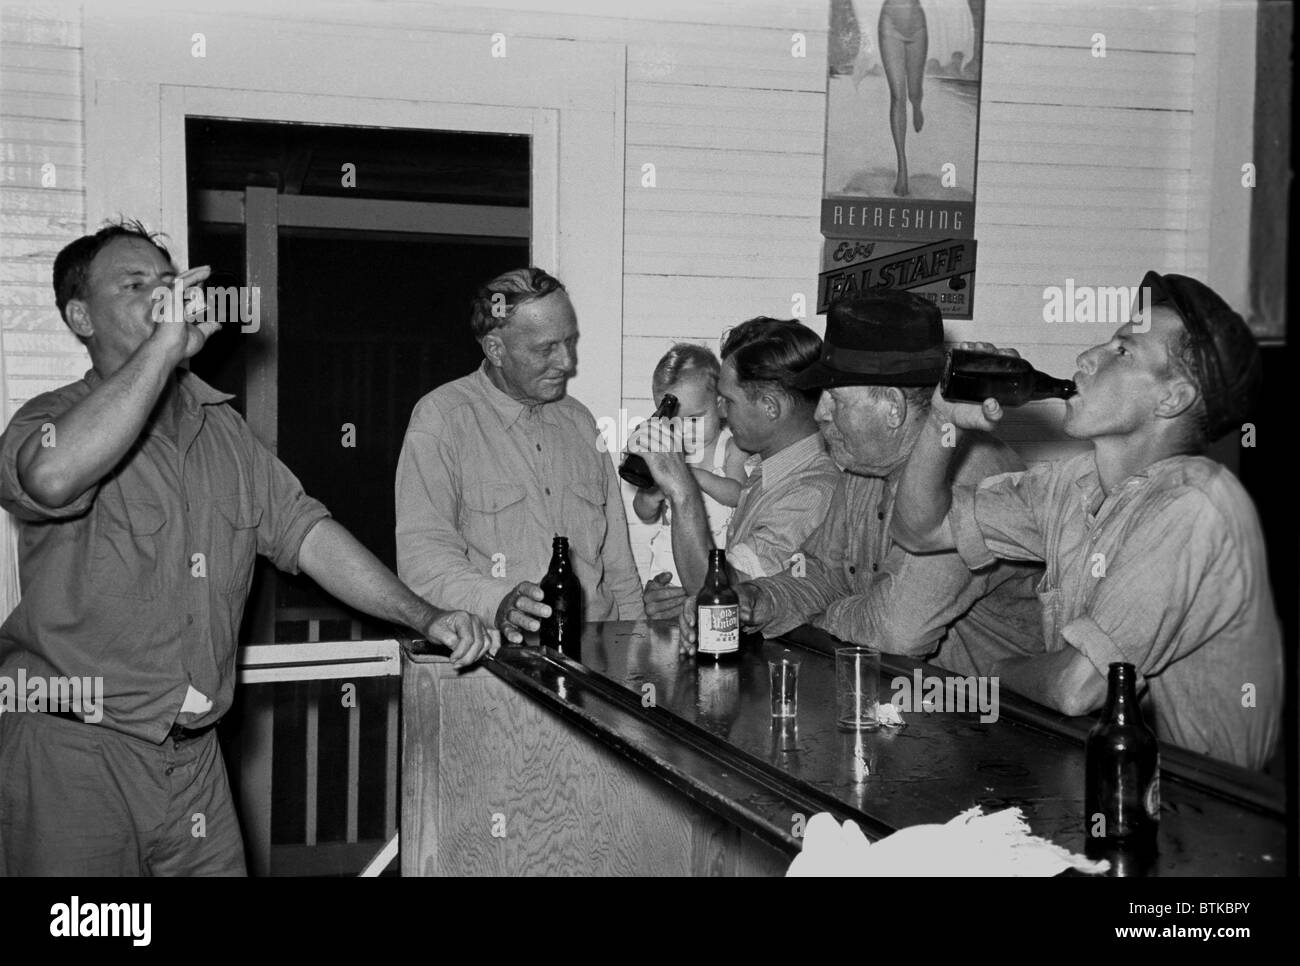 Gli uomini di bere birra presso il bar in Pilottown, Louisiana, durante la Grande Depressione. Il divieto era finito quando Roosevelt ha firmato la birra "bill' durante i suoi primi cento giorni. Essa è stata completamente abrogata con la ratifica del xxi emendamento il 5 dicembre 1933. 1938 foto di Russell Lee. Foto Stock